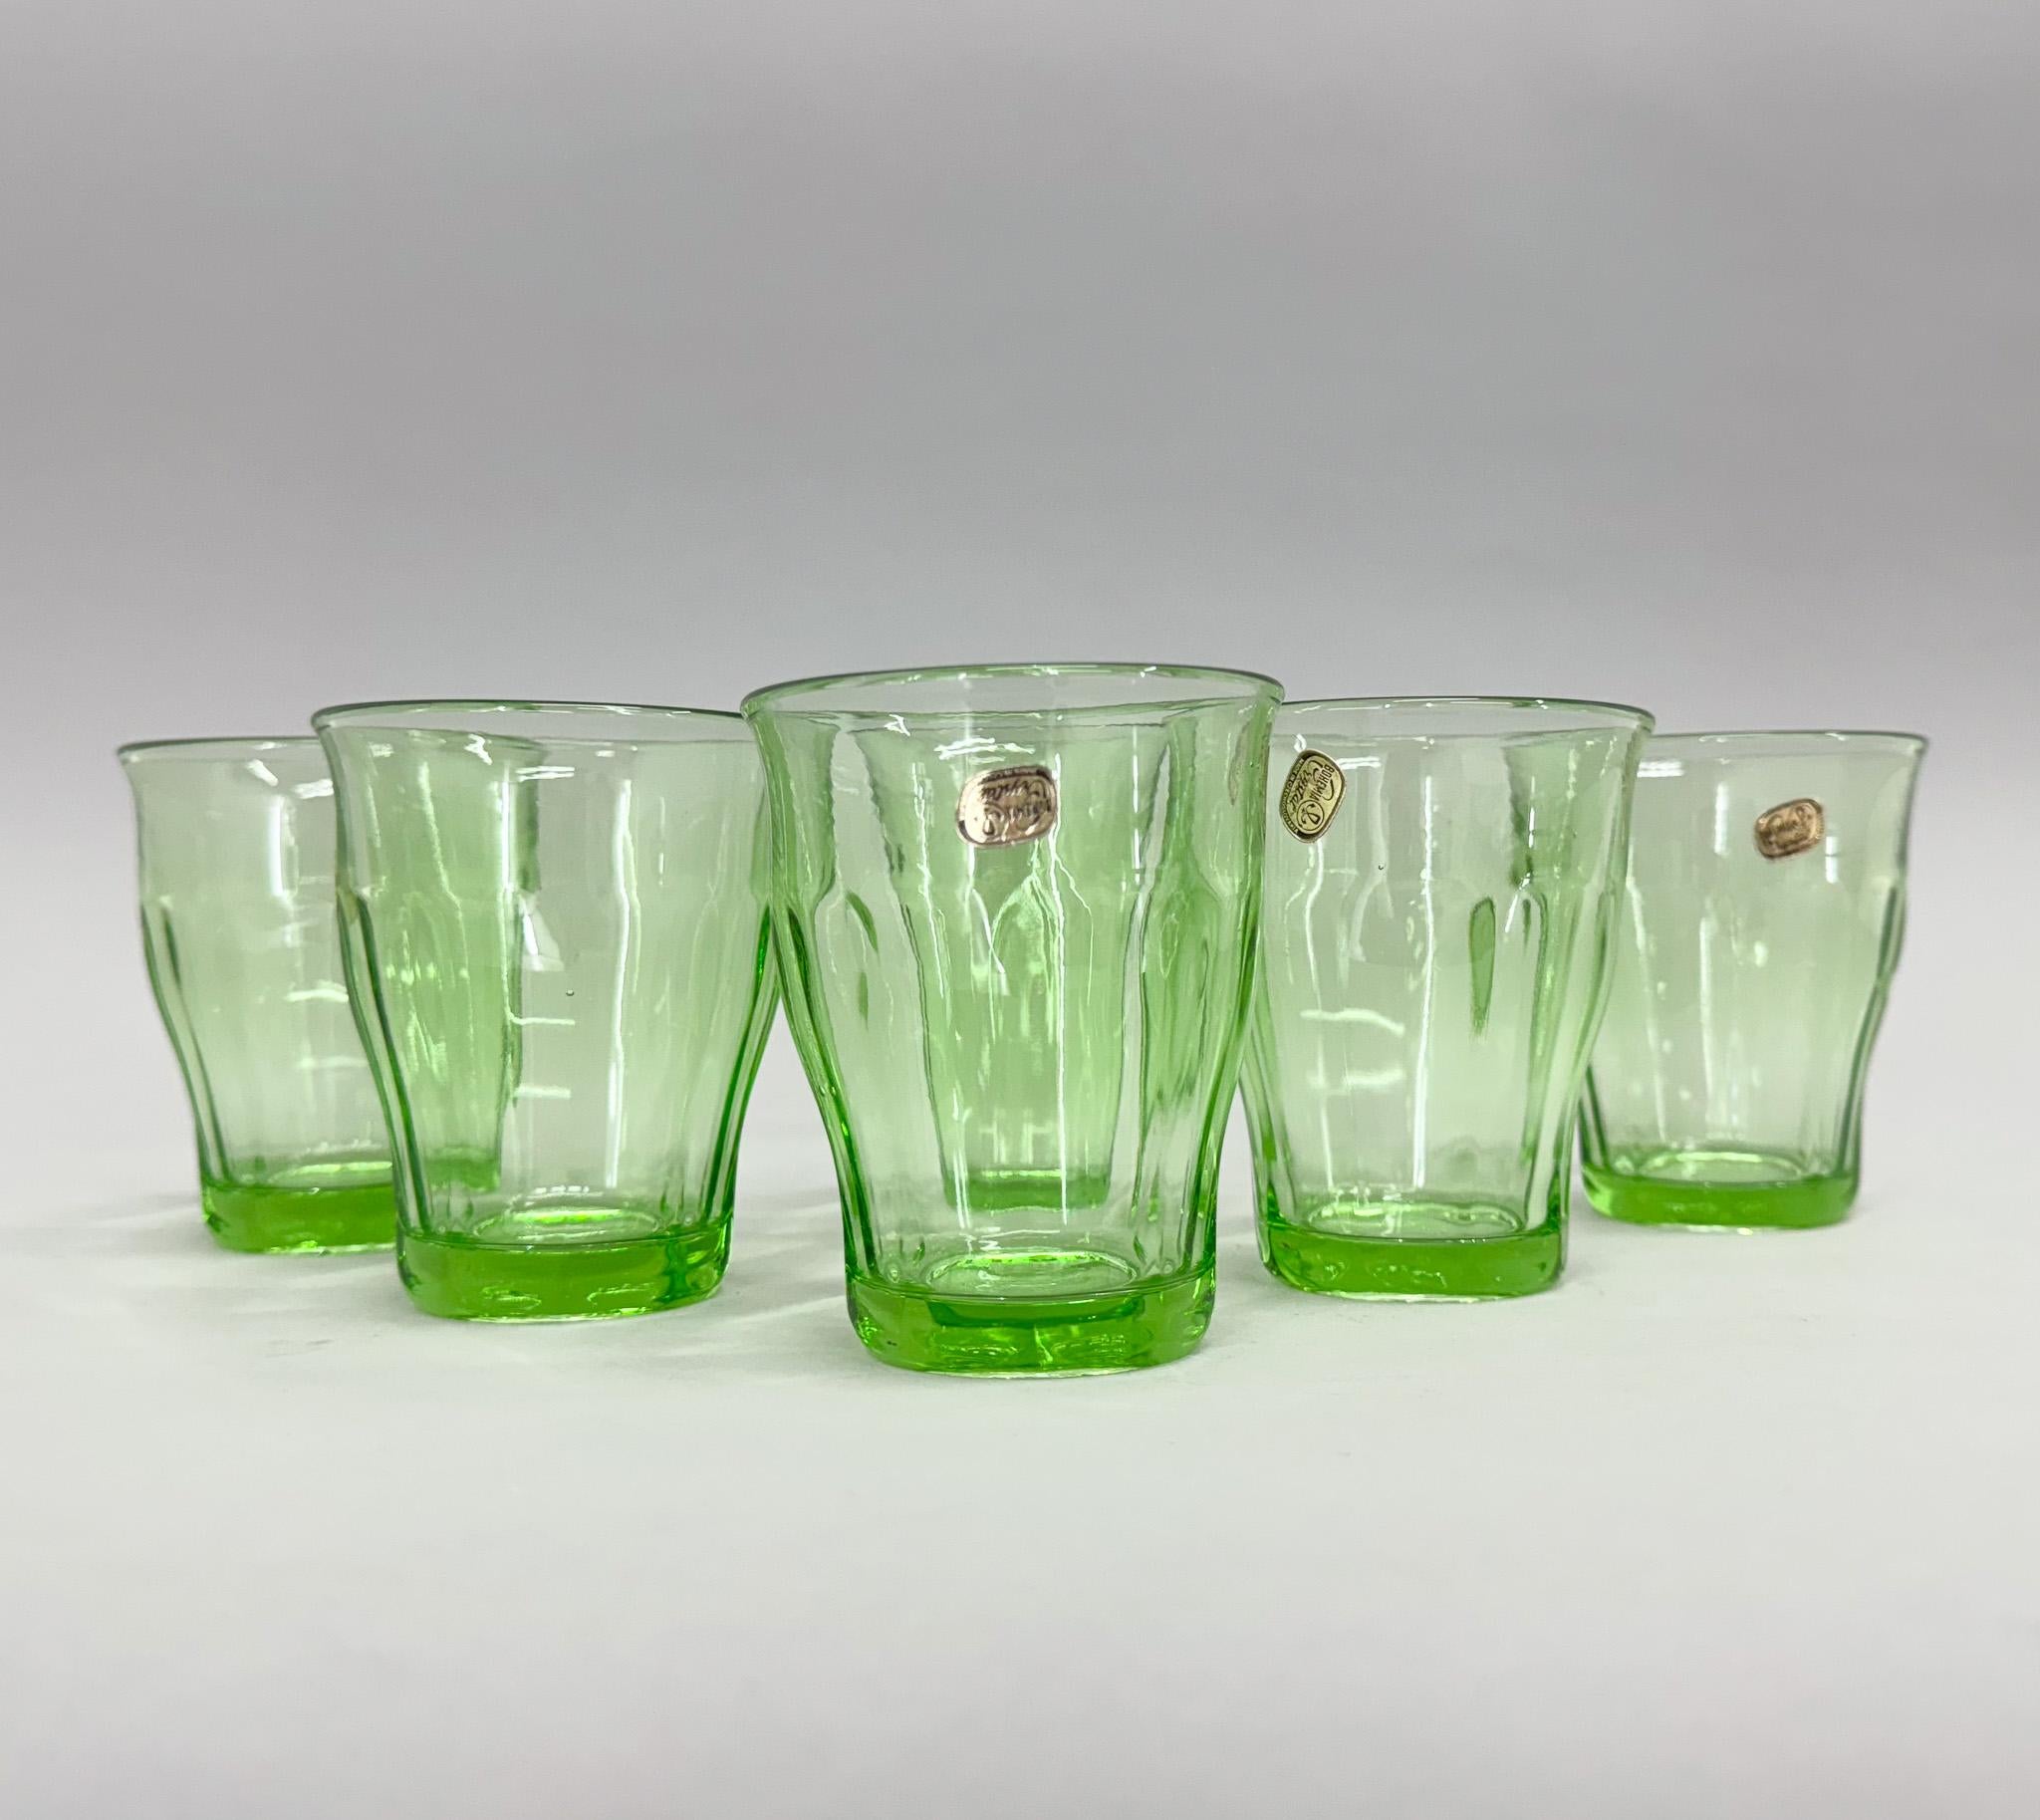 Ensemble de six verres en cristal de Bohême fabriqués en verre à l'uranium et produits dans l'ancienne Tchécoslovaquie dans les années 1970. Encore étiqueté, probablement jamais utilisé.